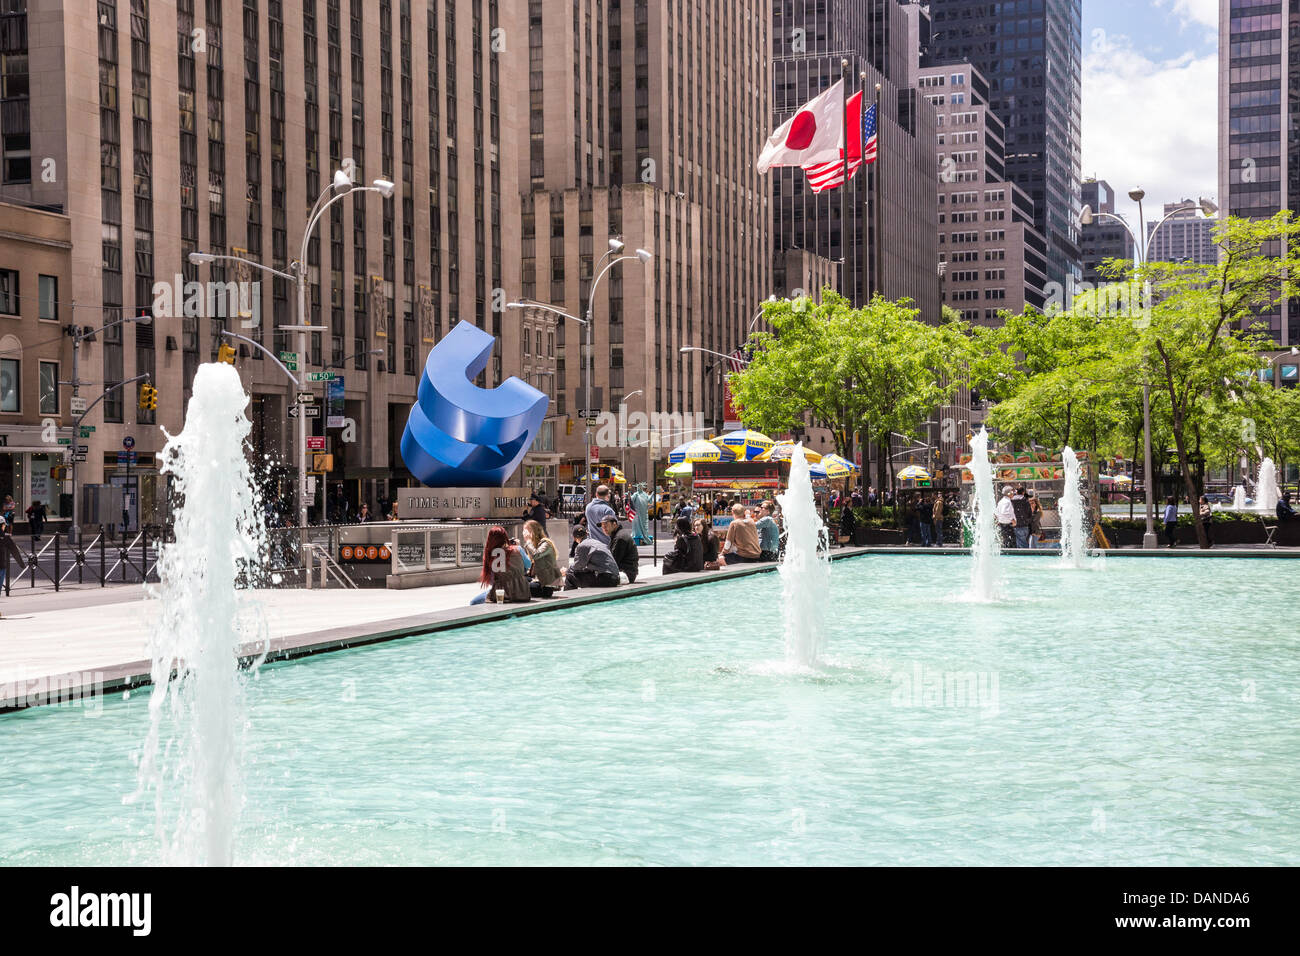 La fontana e la piscina e il Cubo curvo, da scultore americano William Crovello, al di fuori del Time & Life Building di New York City Foto Stock